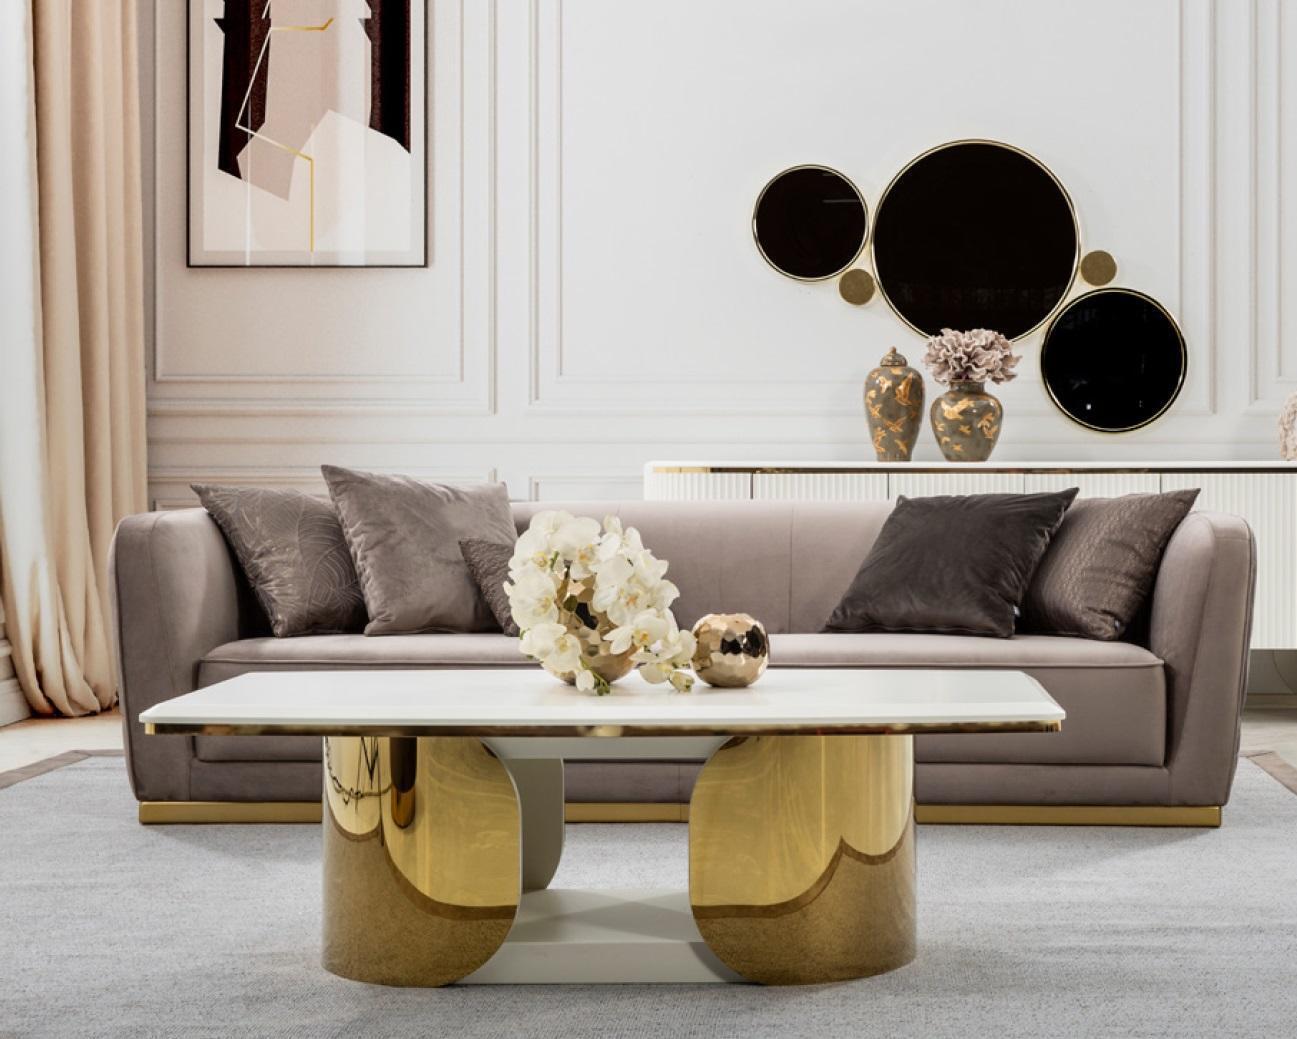 Sofa 4 Sitz beige Sofa Stil Luxus Wohnzimmer modernes Design Polsterstoff neu